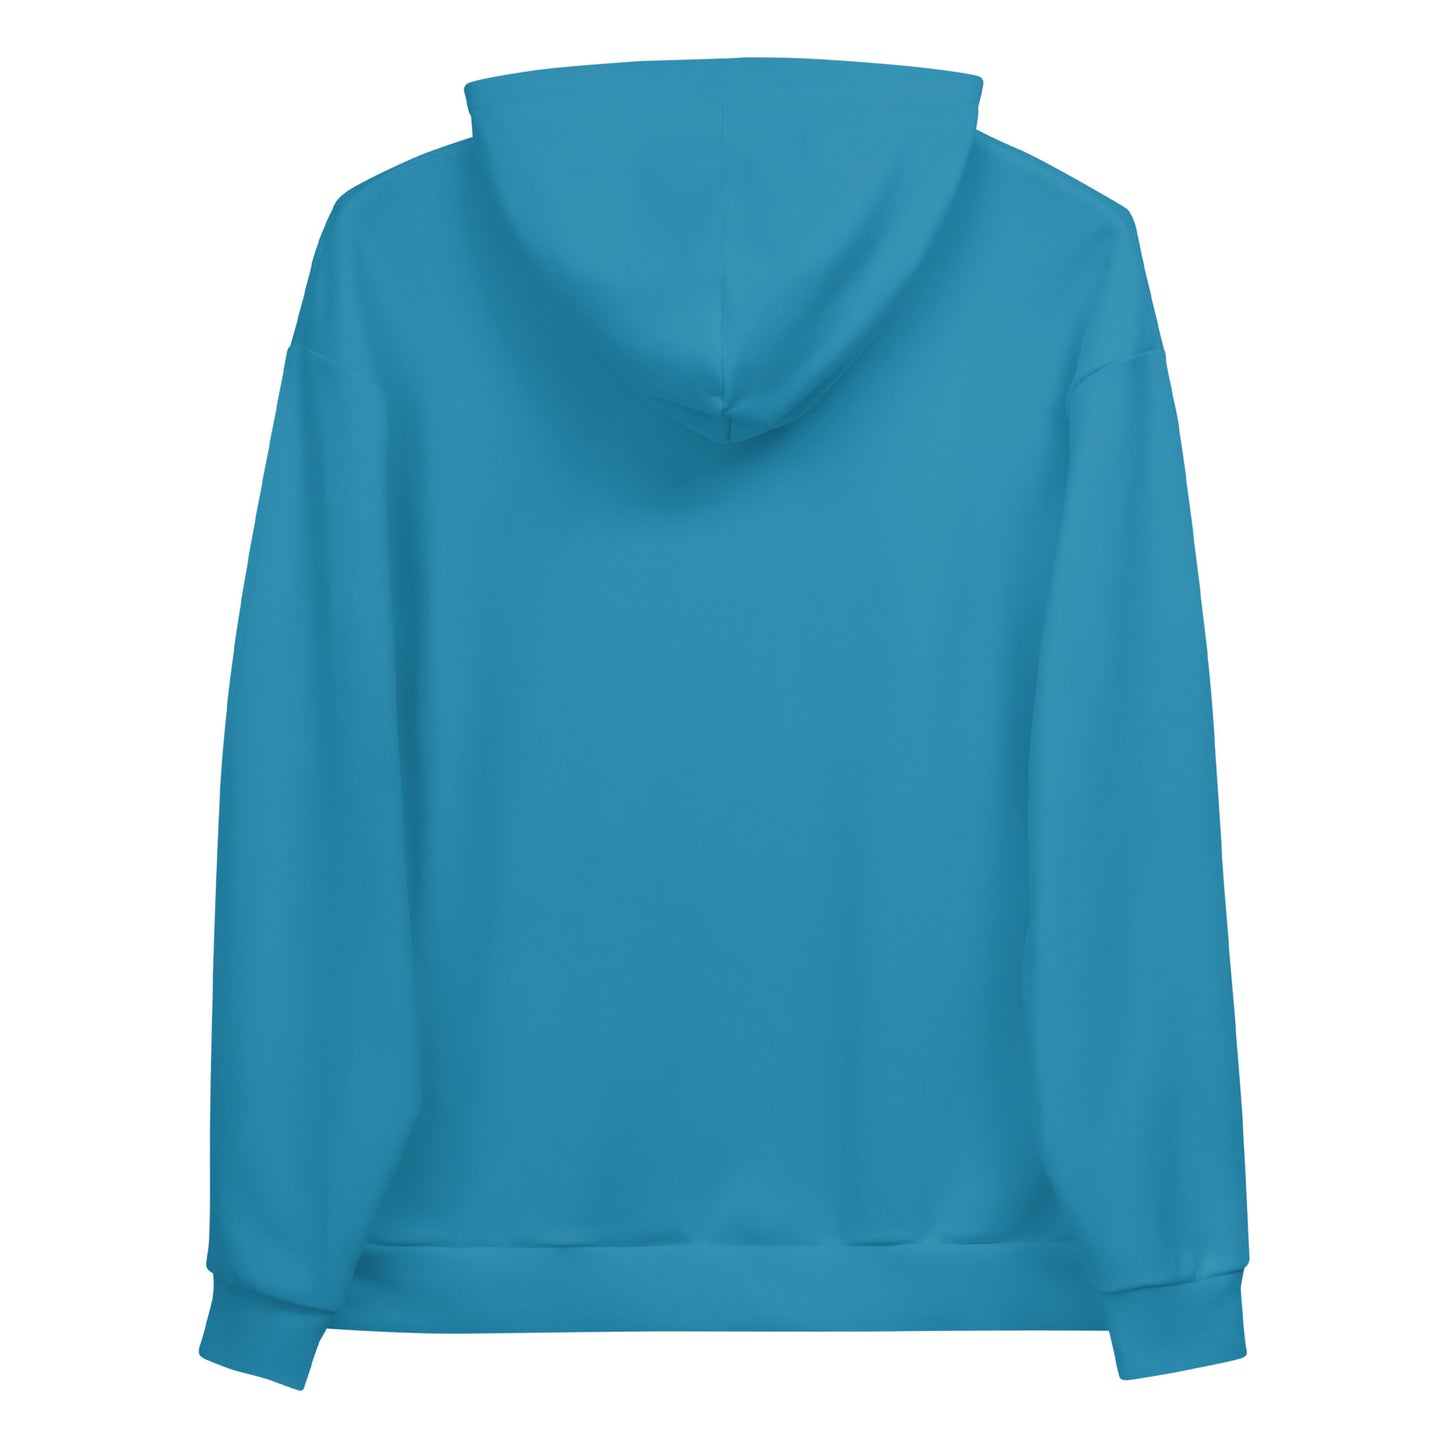 Workwear for Women Hoodie - Dusty Blue